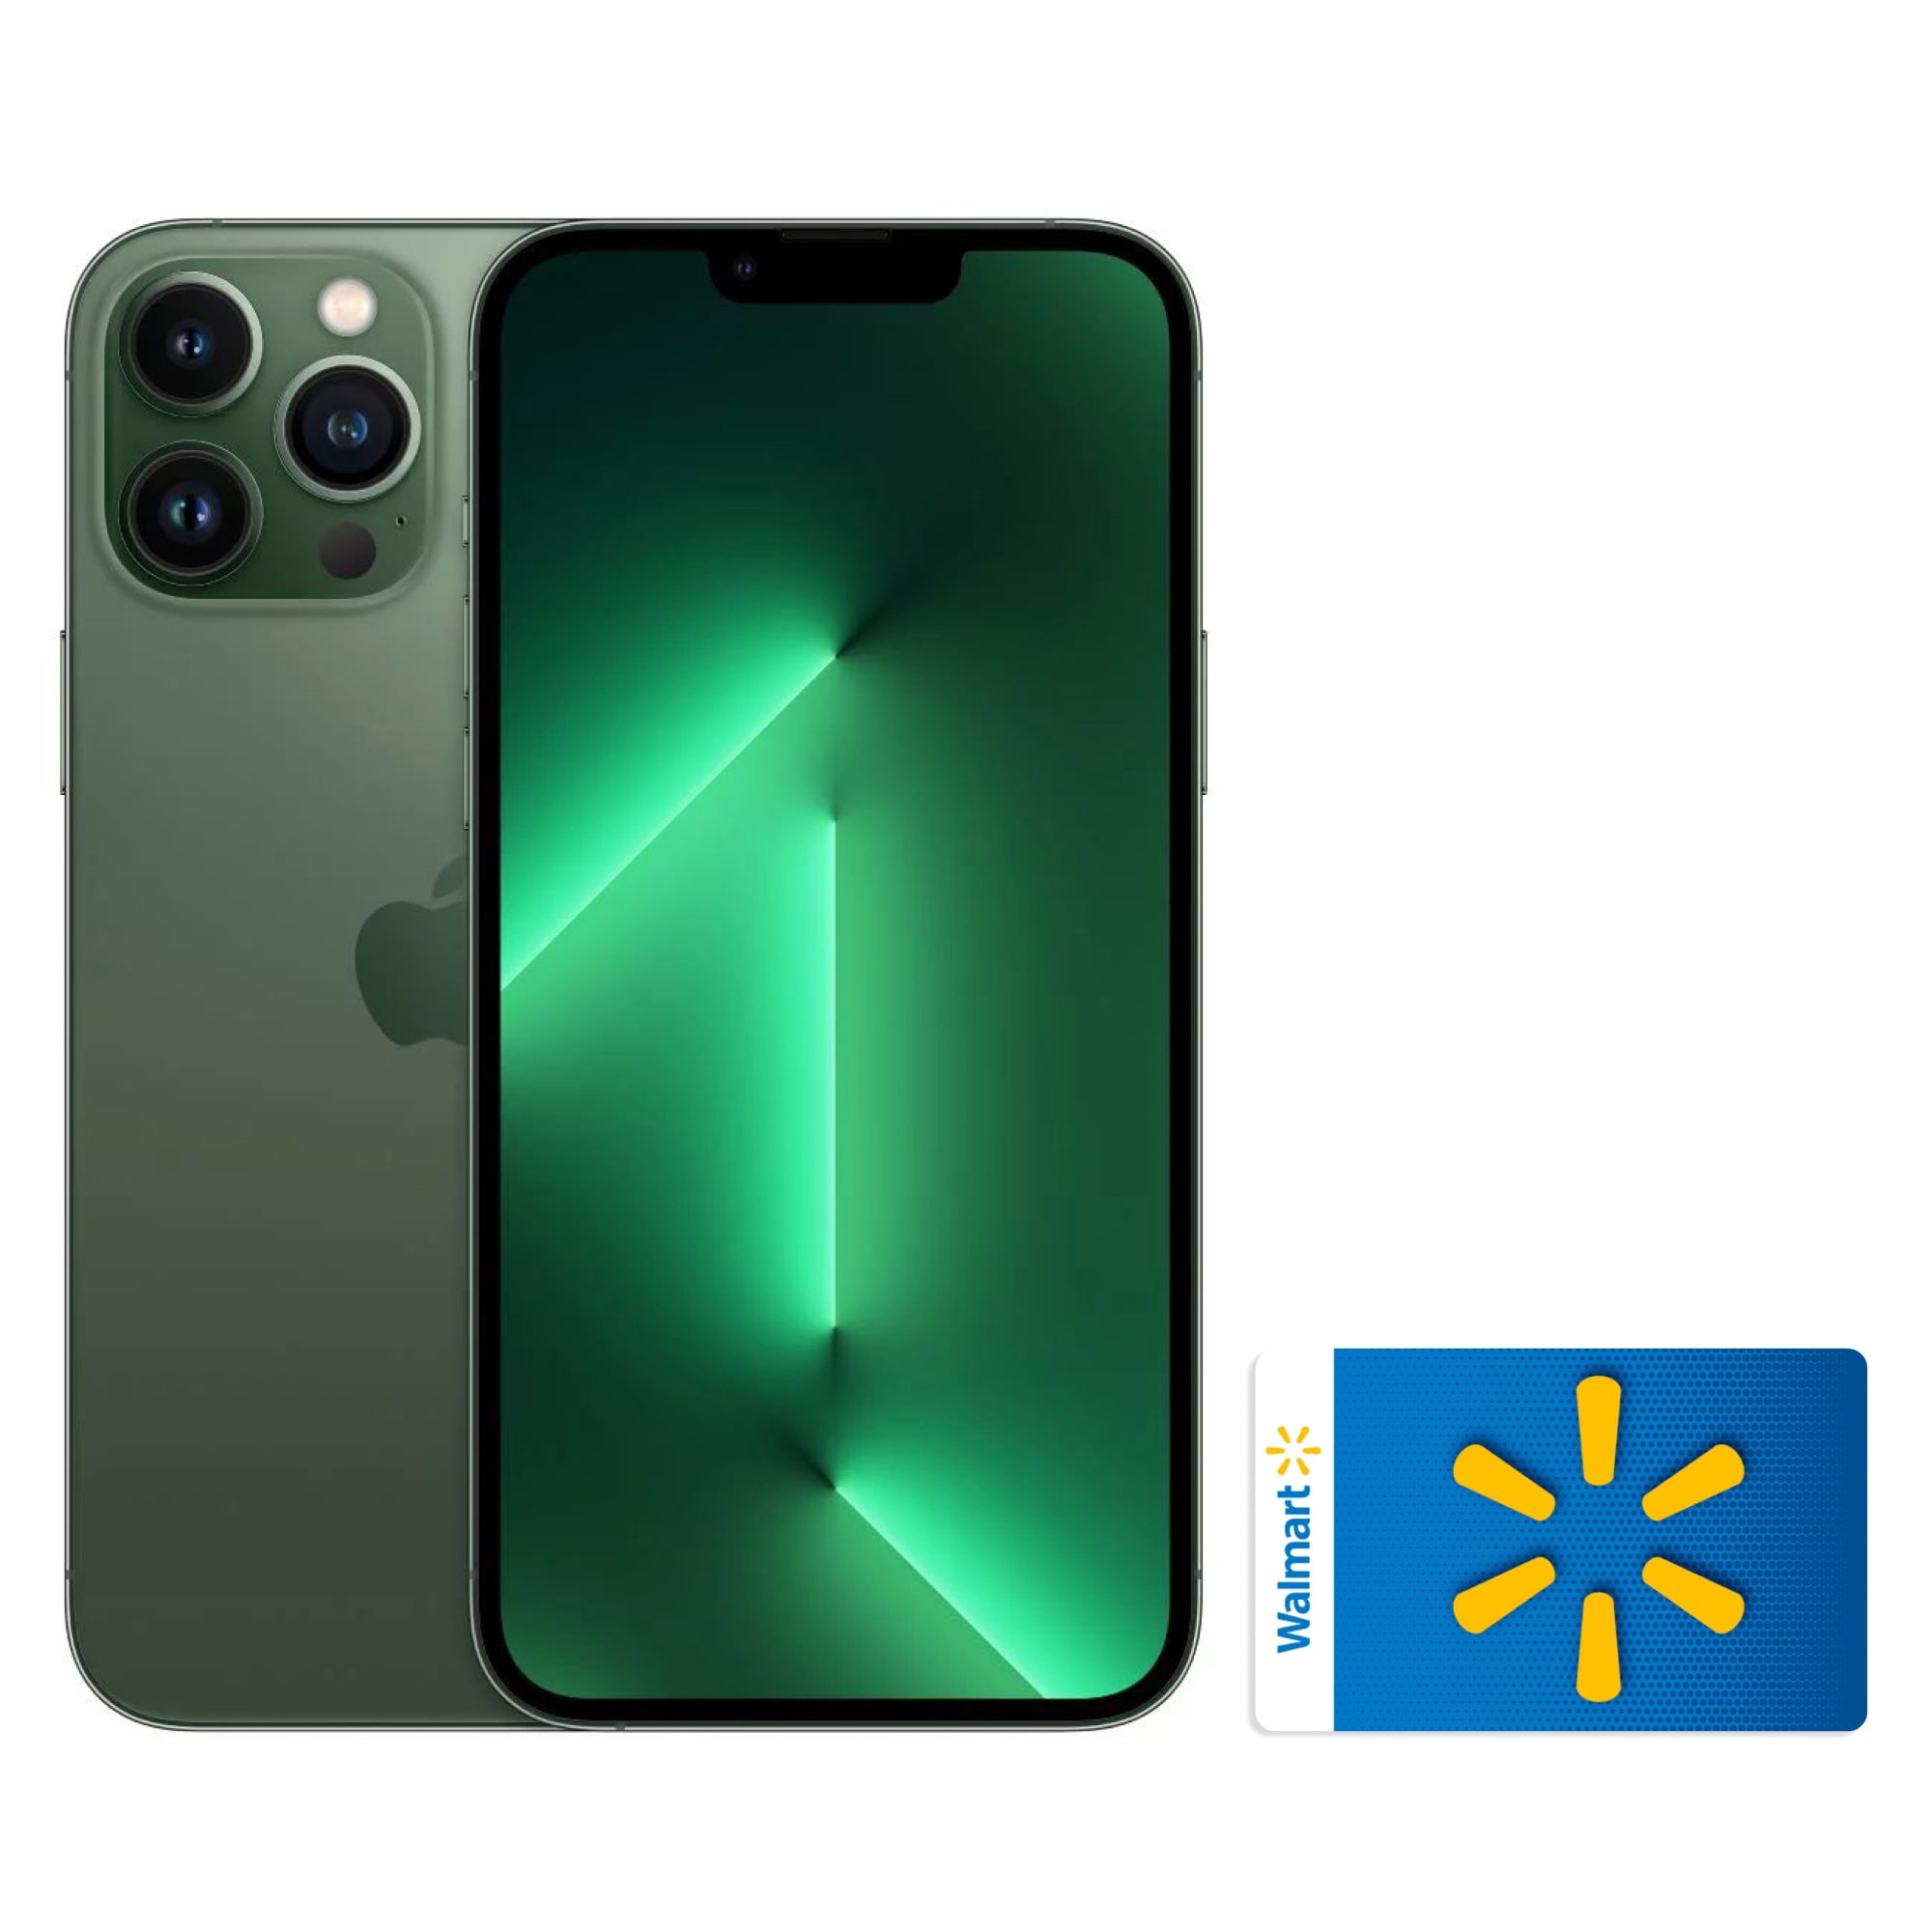 AT&T iPhone 13 Pro Max 256GB Alpine Green - Walmart.com